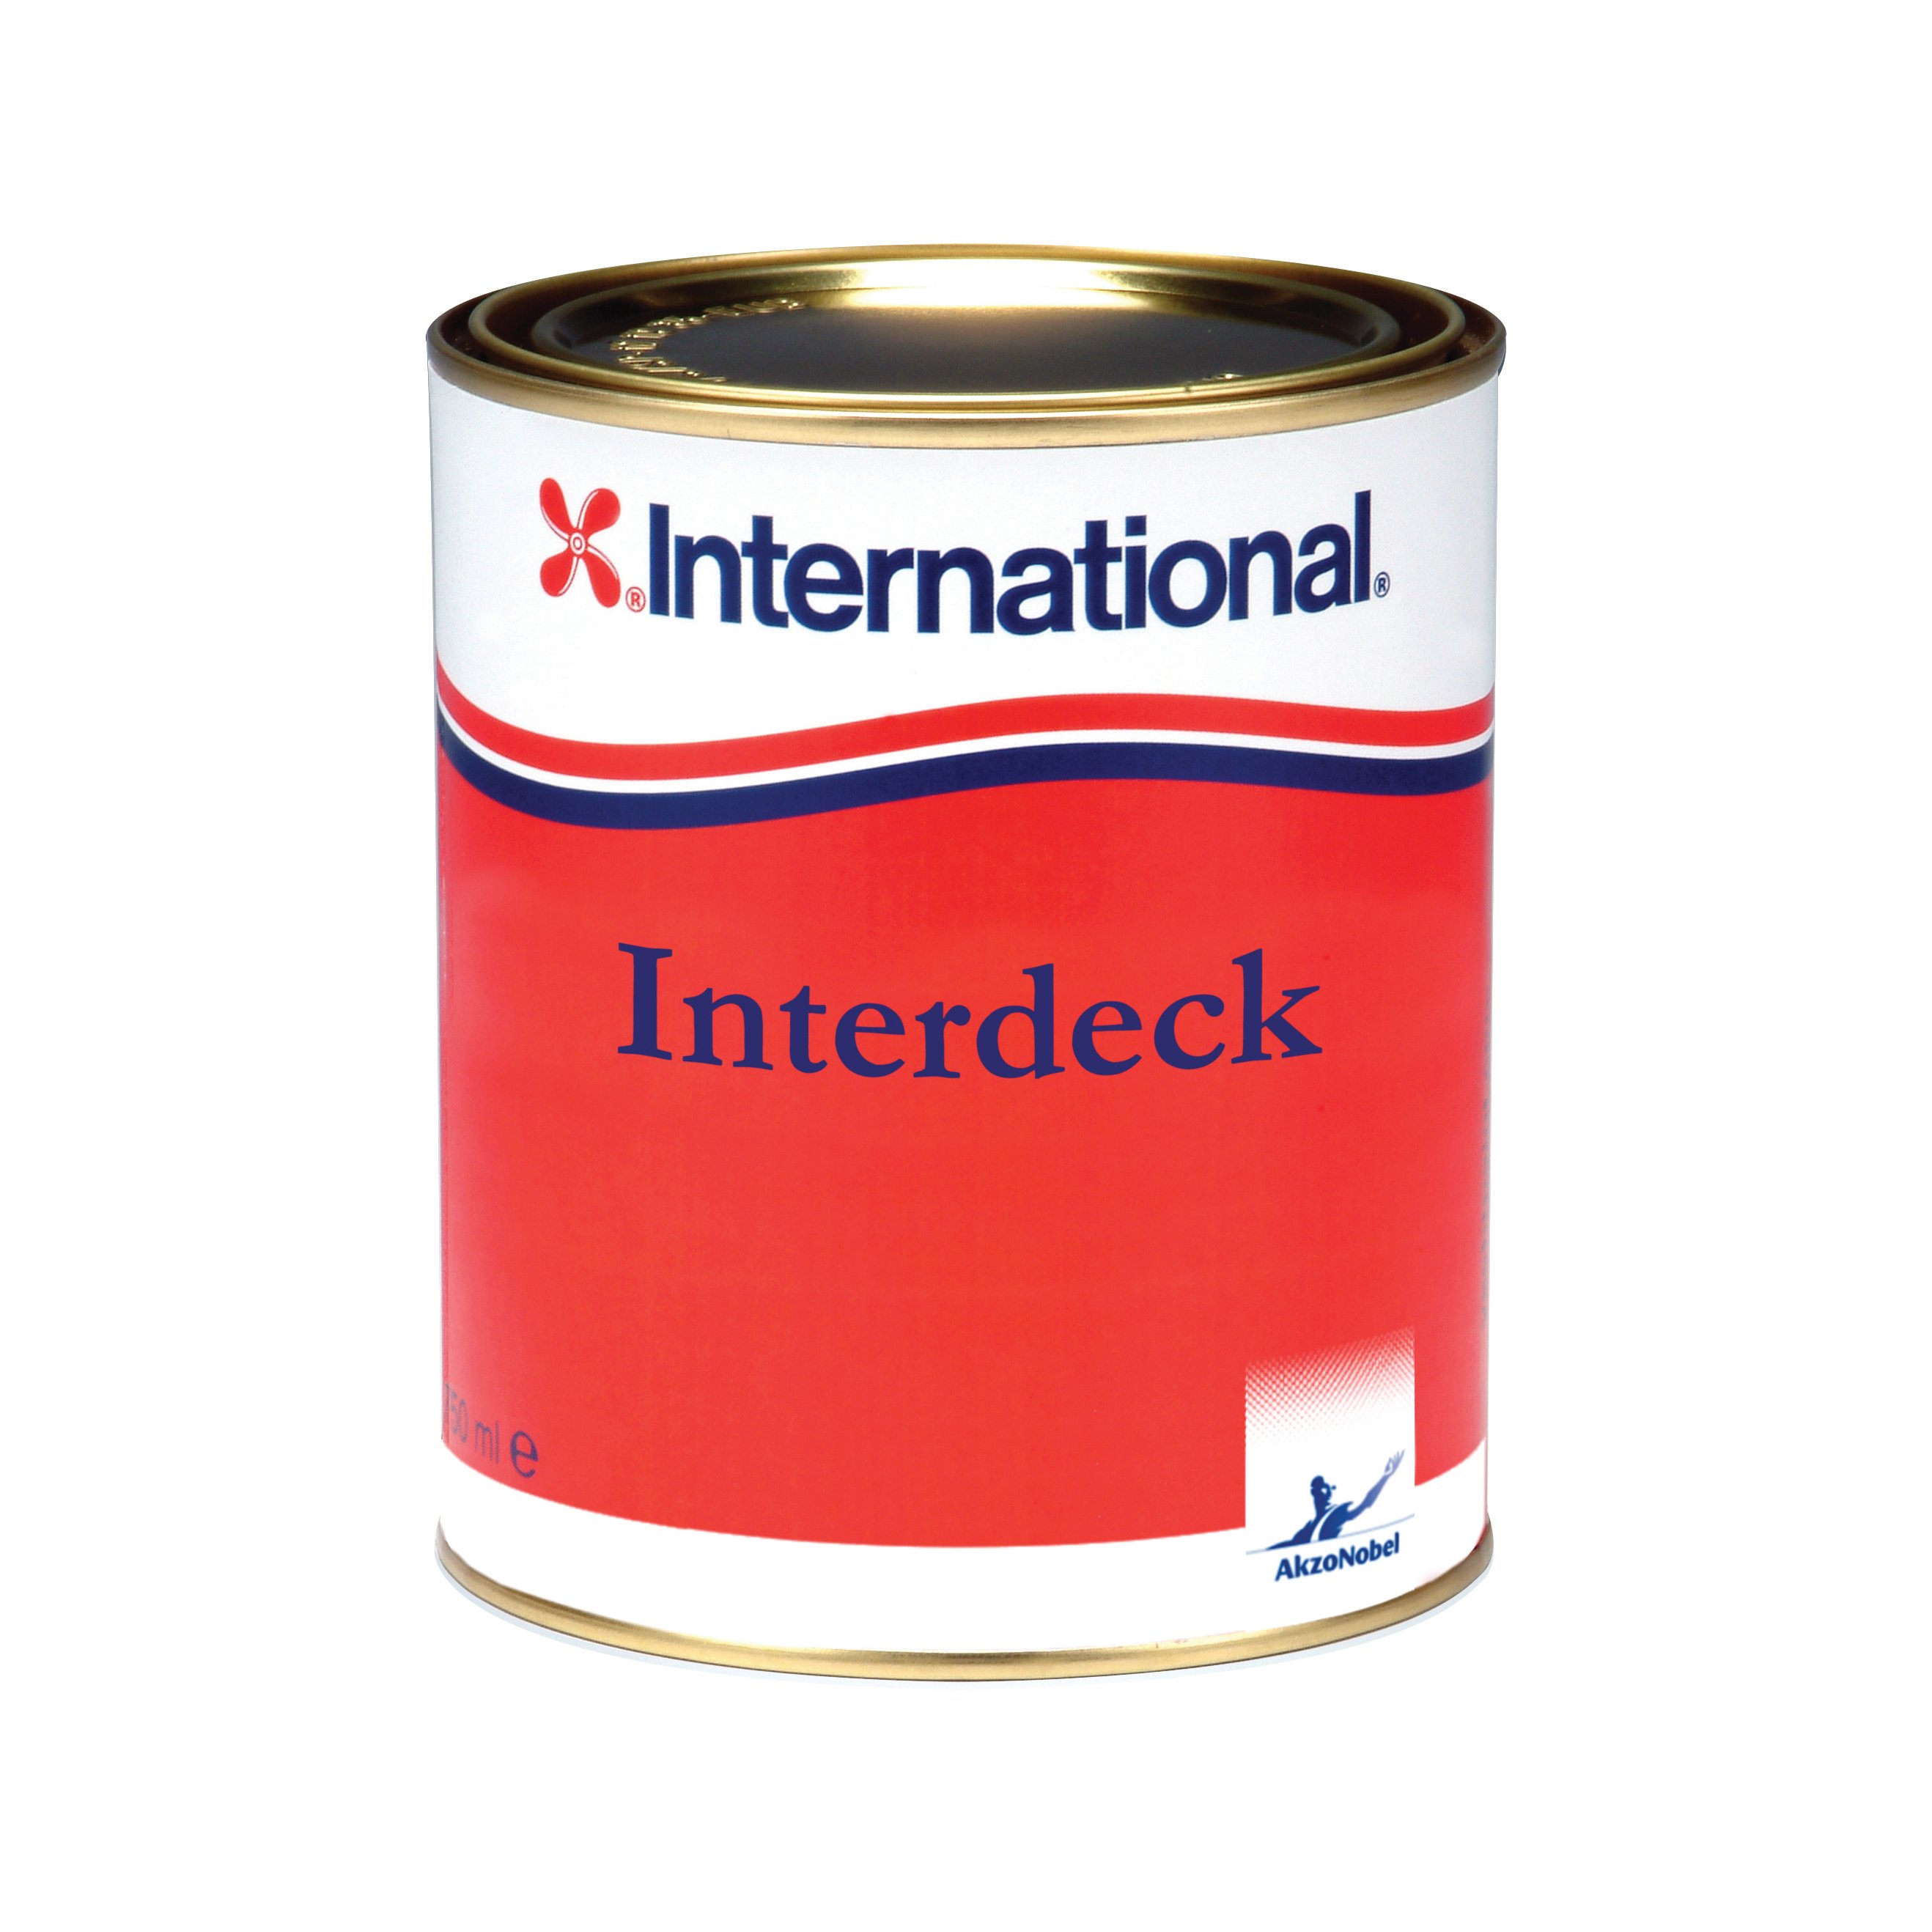 International Interdeck laque marine de finition - bleu 923, 750ml